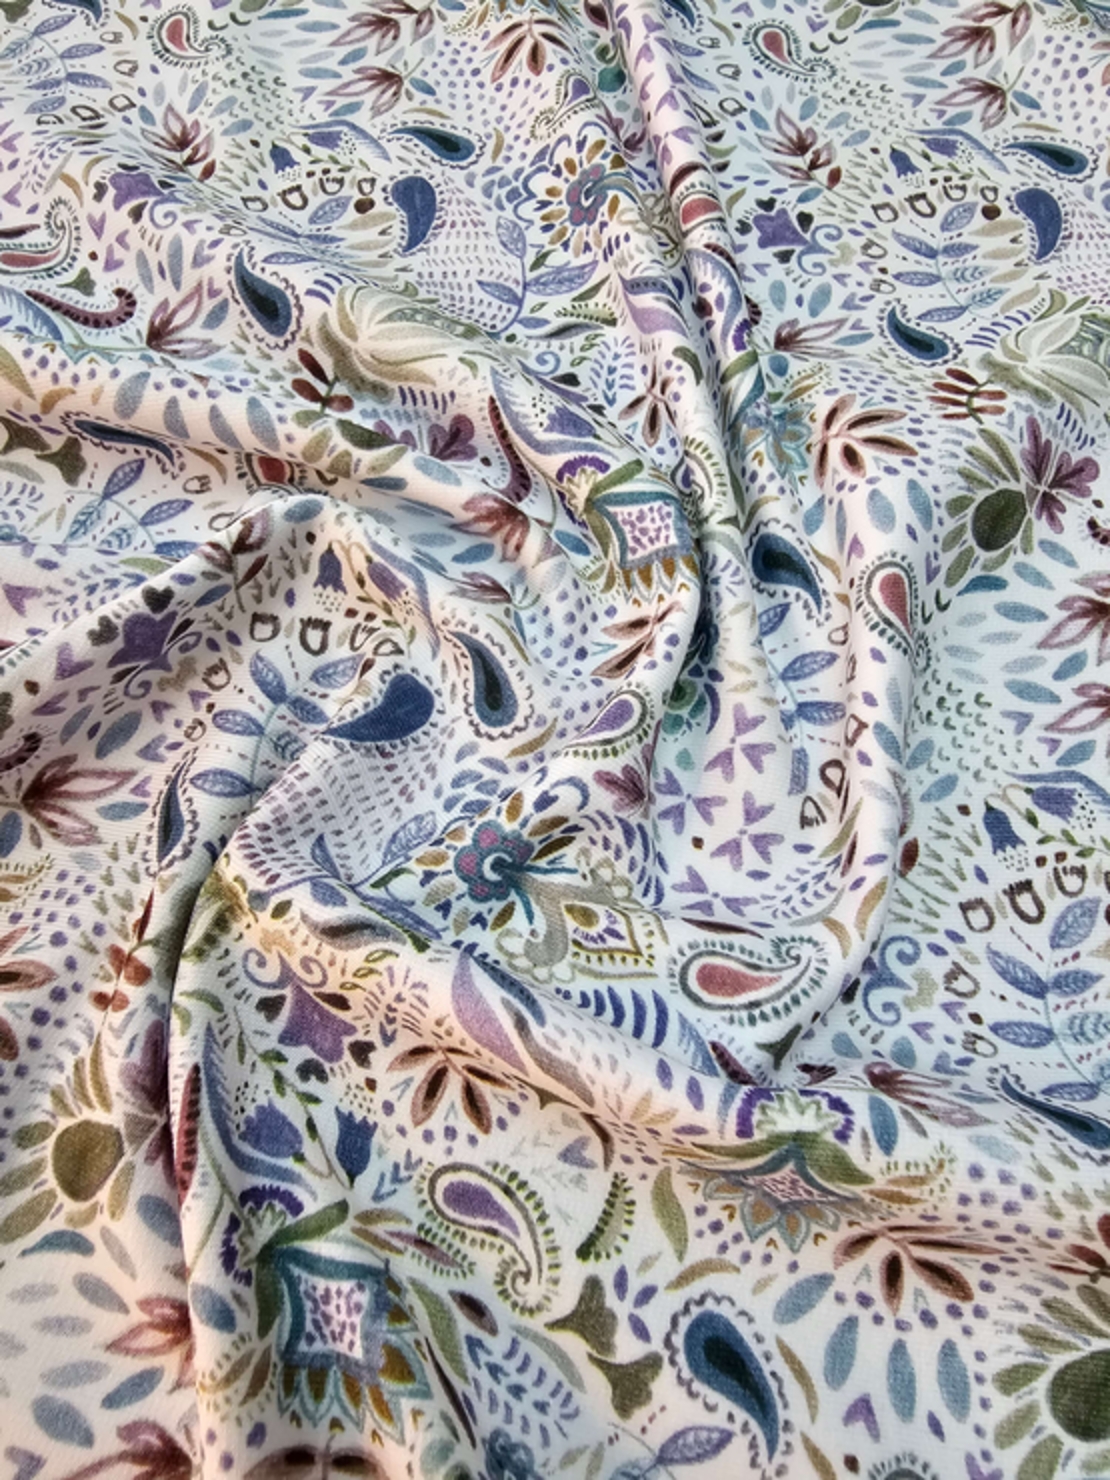 פרנץ טרי דפוס פייזלי גווני סגול על רקע לבן